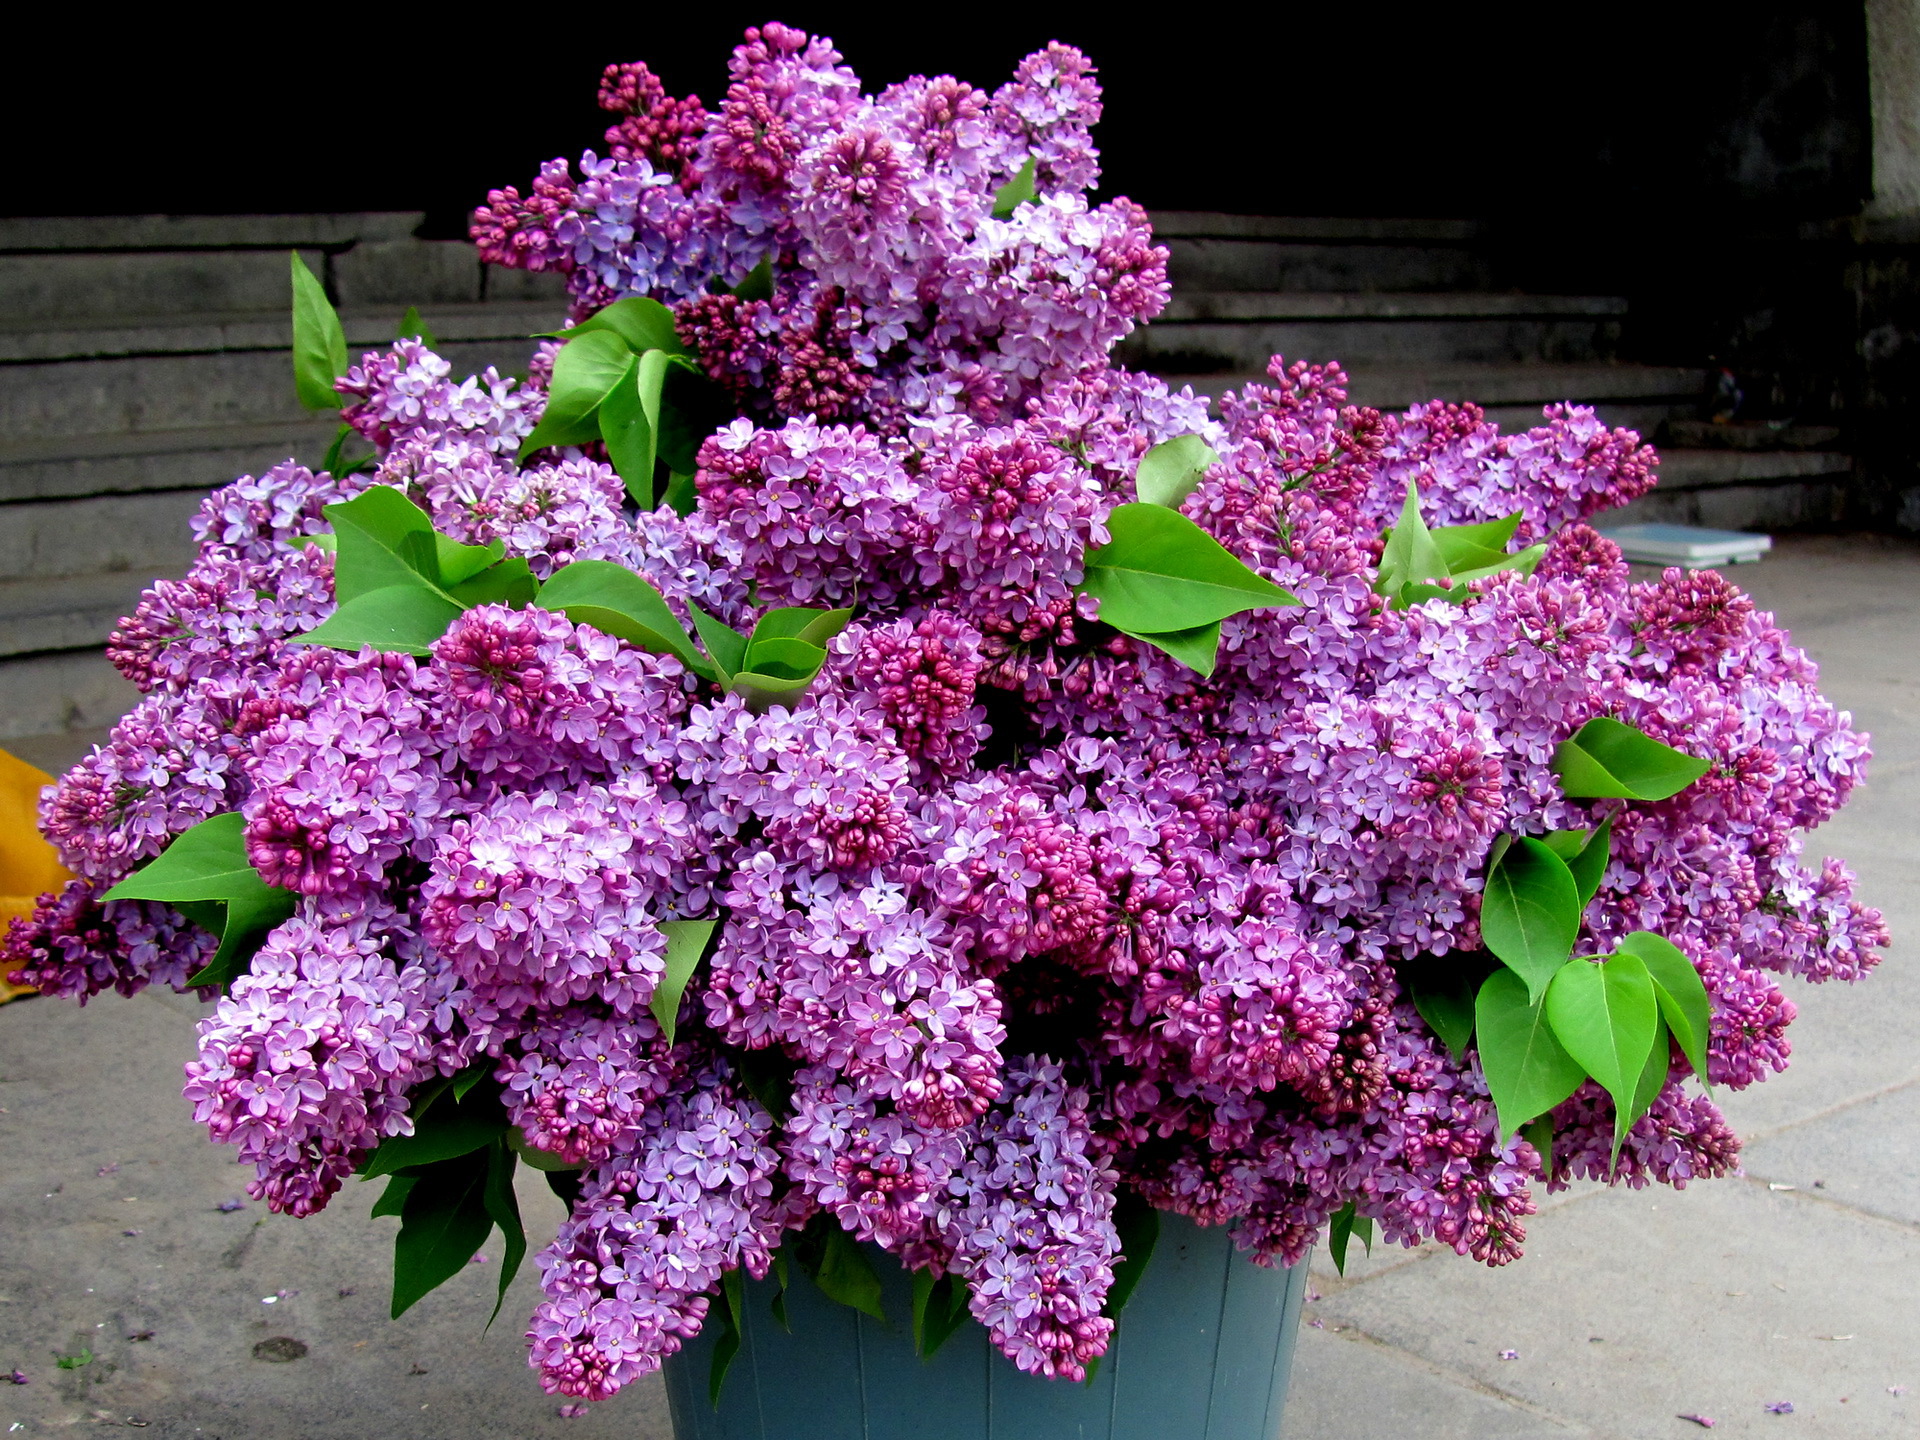 Lilac Photos